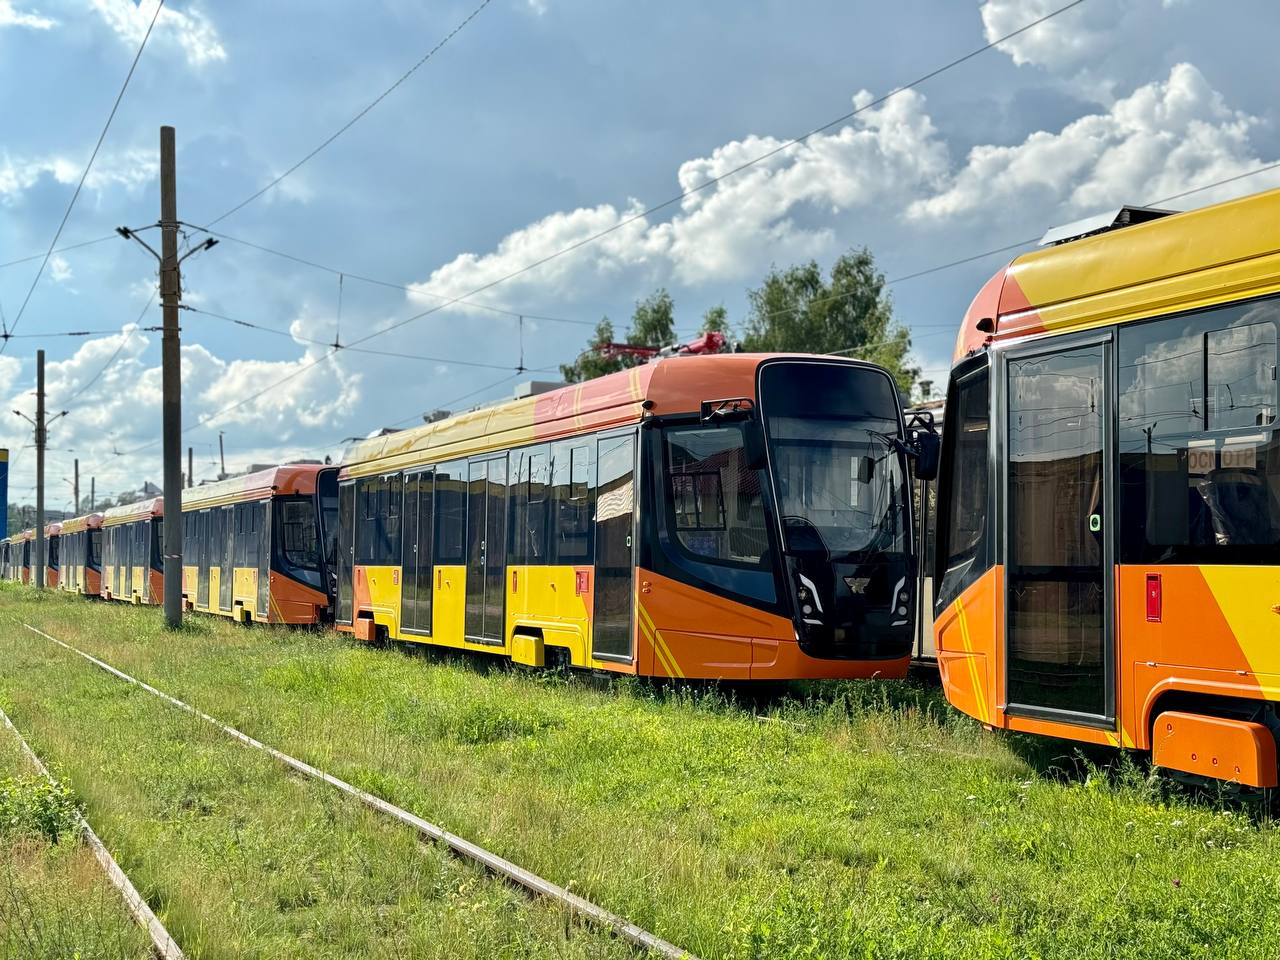 Партия новых низкопольных трамваев поступила в Ярославль